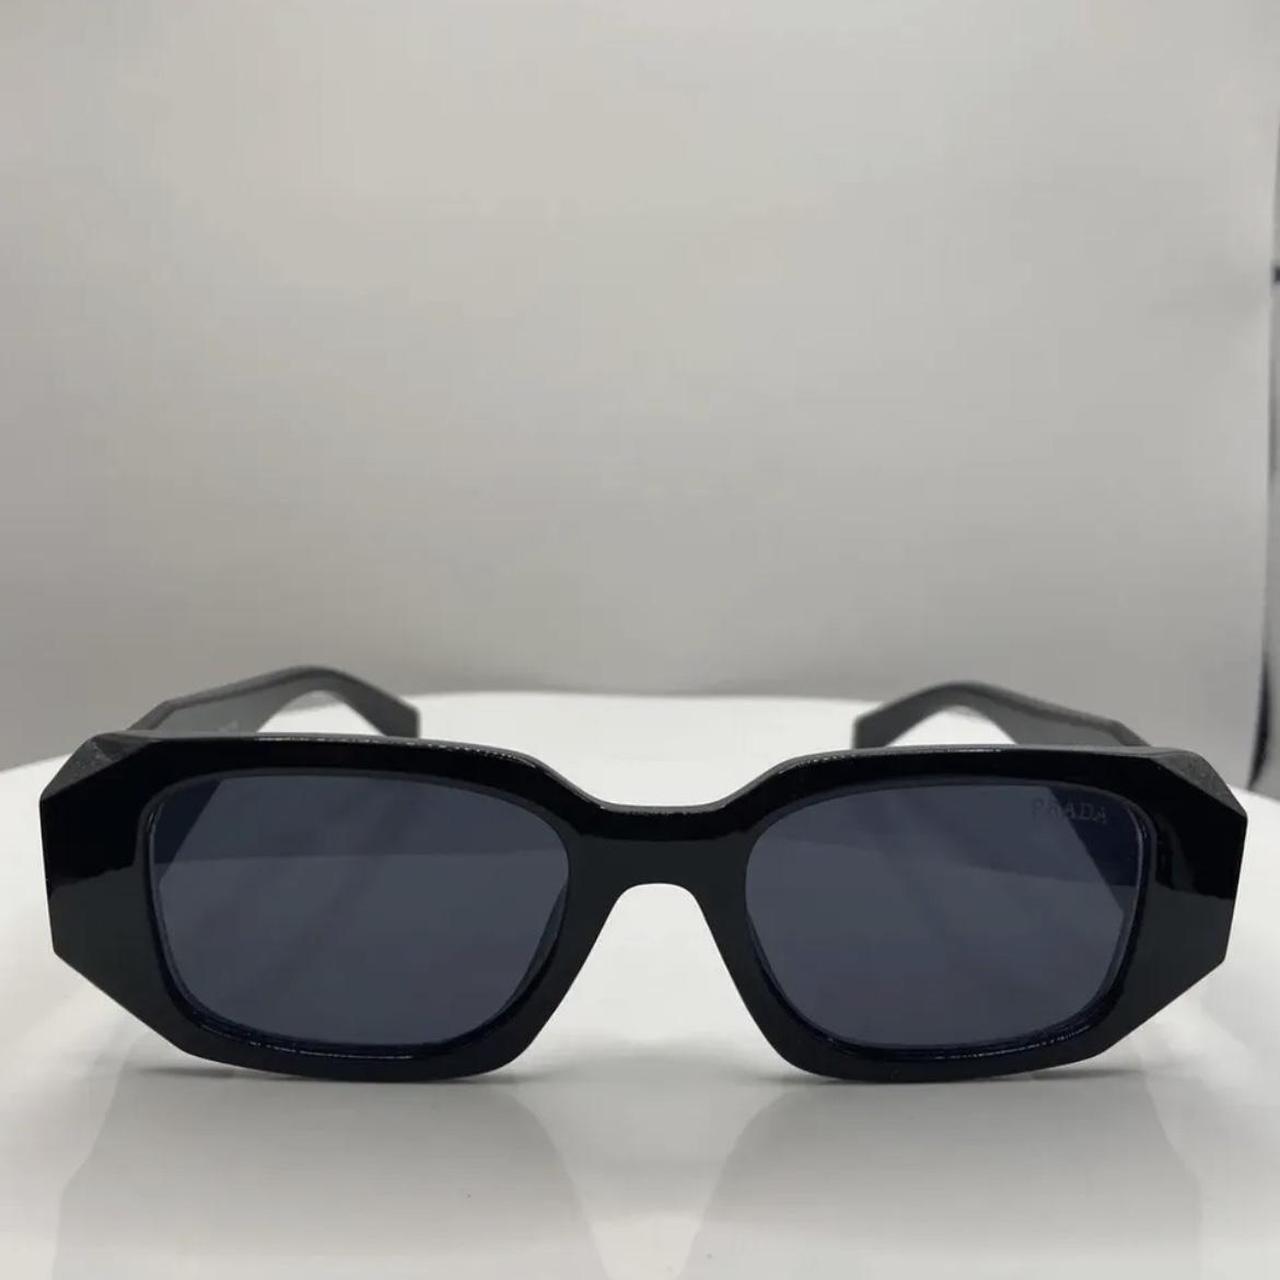 Prada PR17 WS Sunglasses (new)! Got them as a gift... - Depop